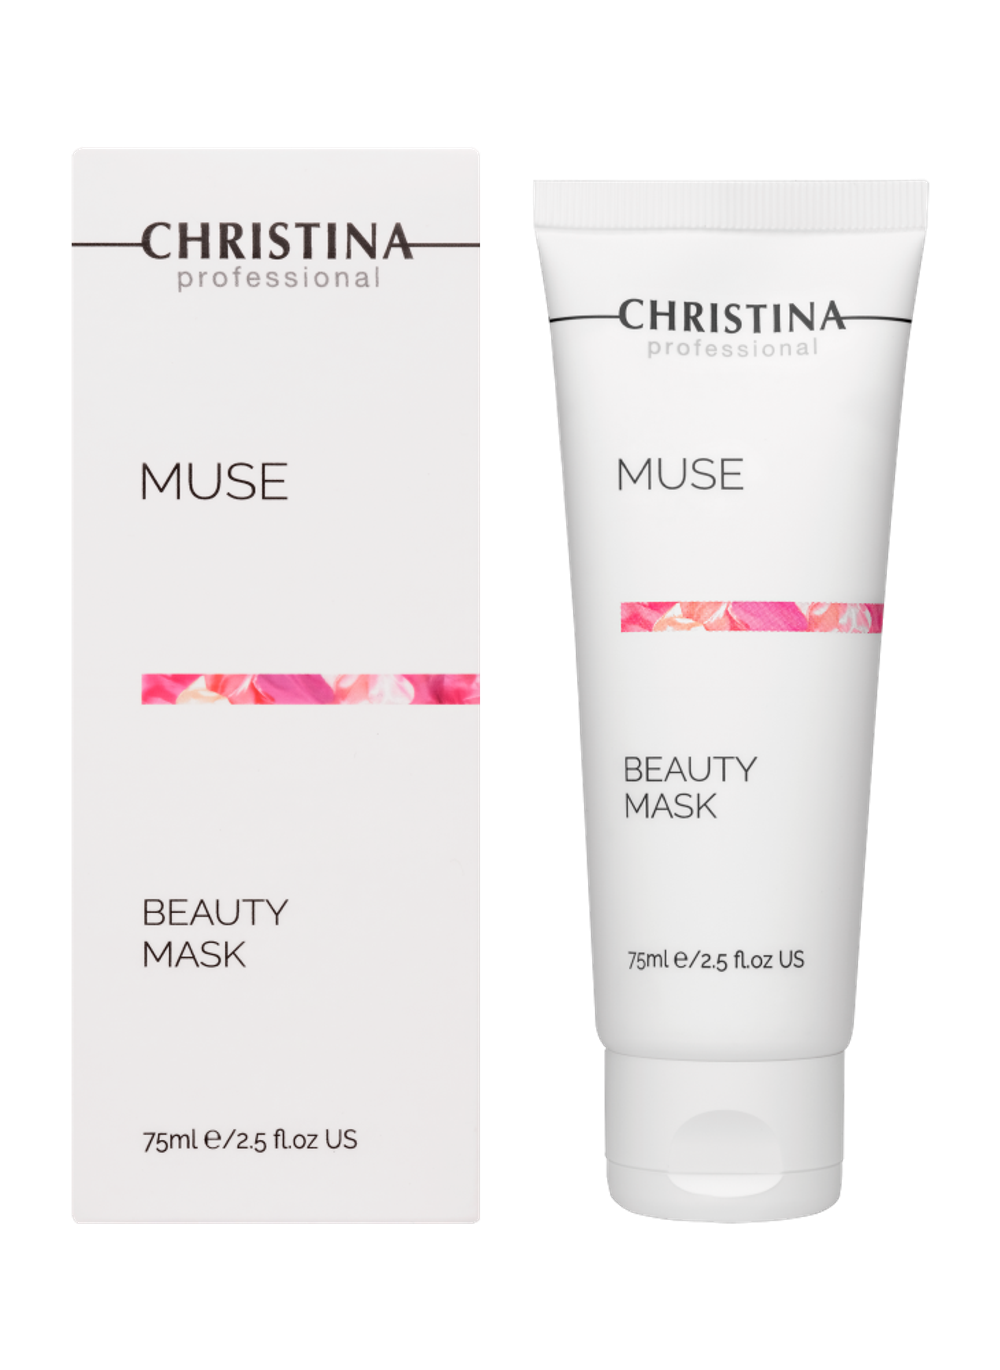 CHRISTINA Muse Beauty Mask